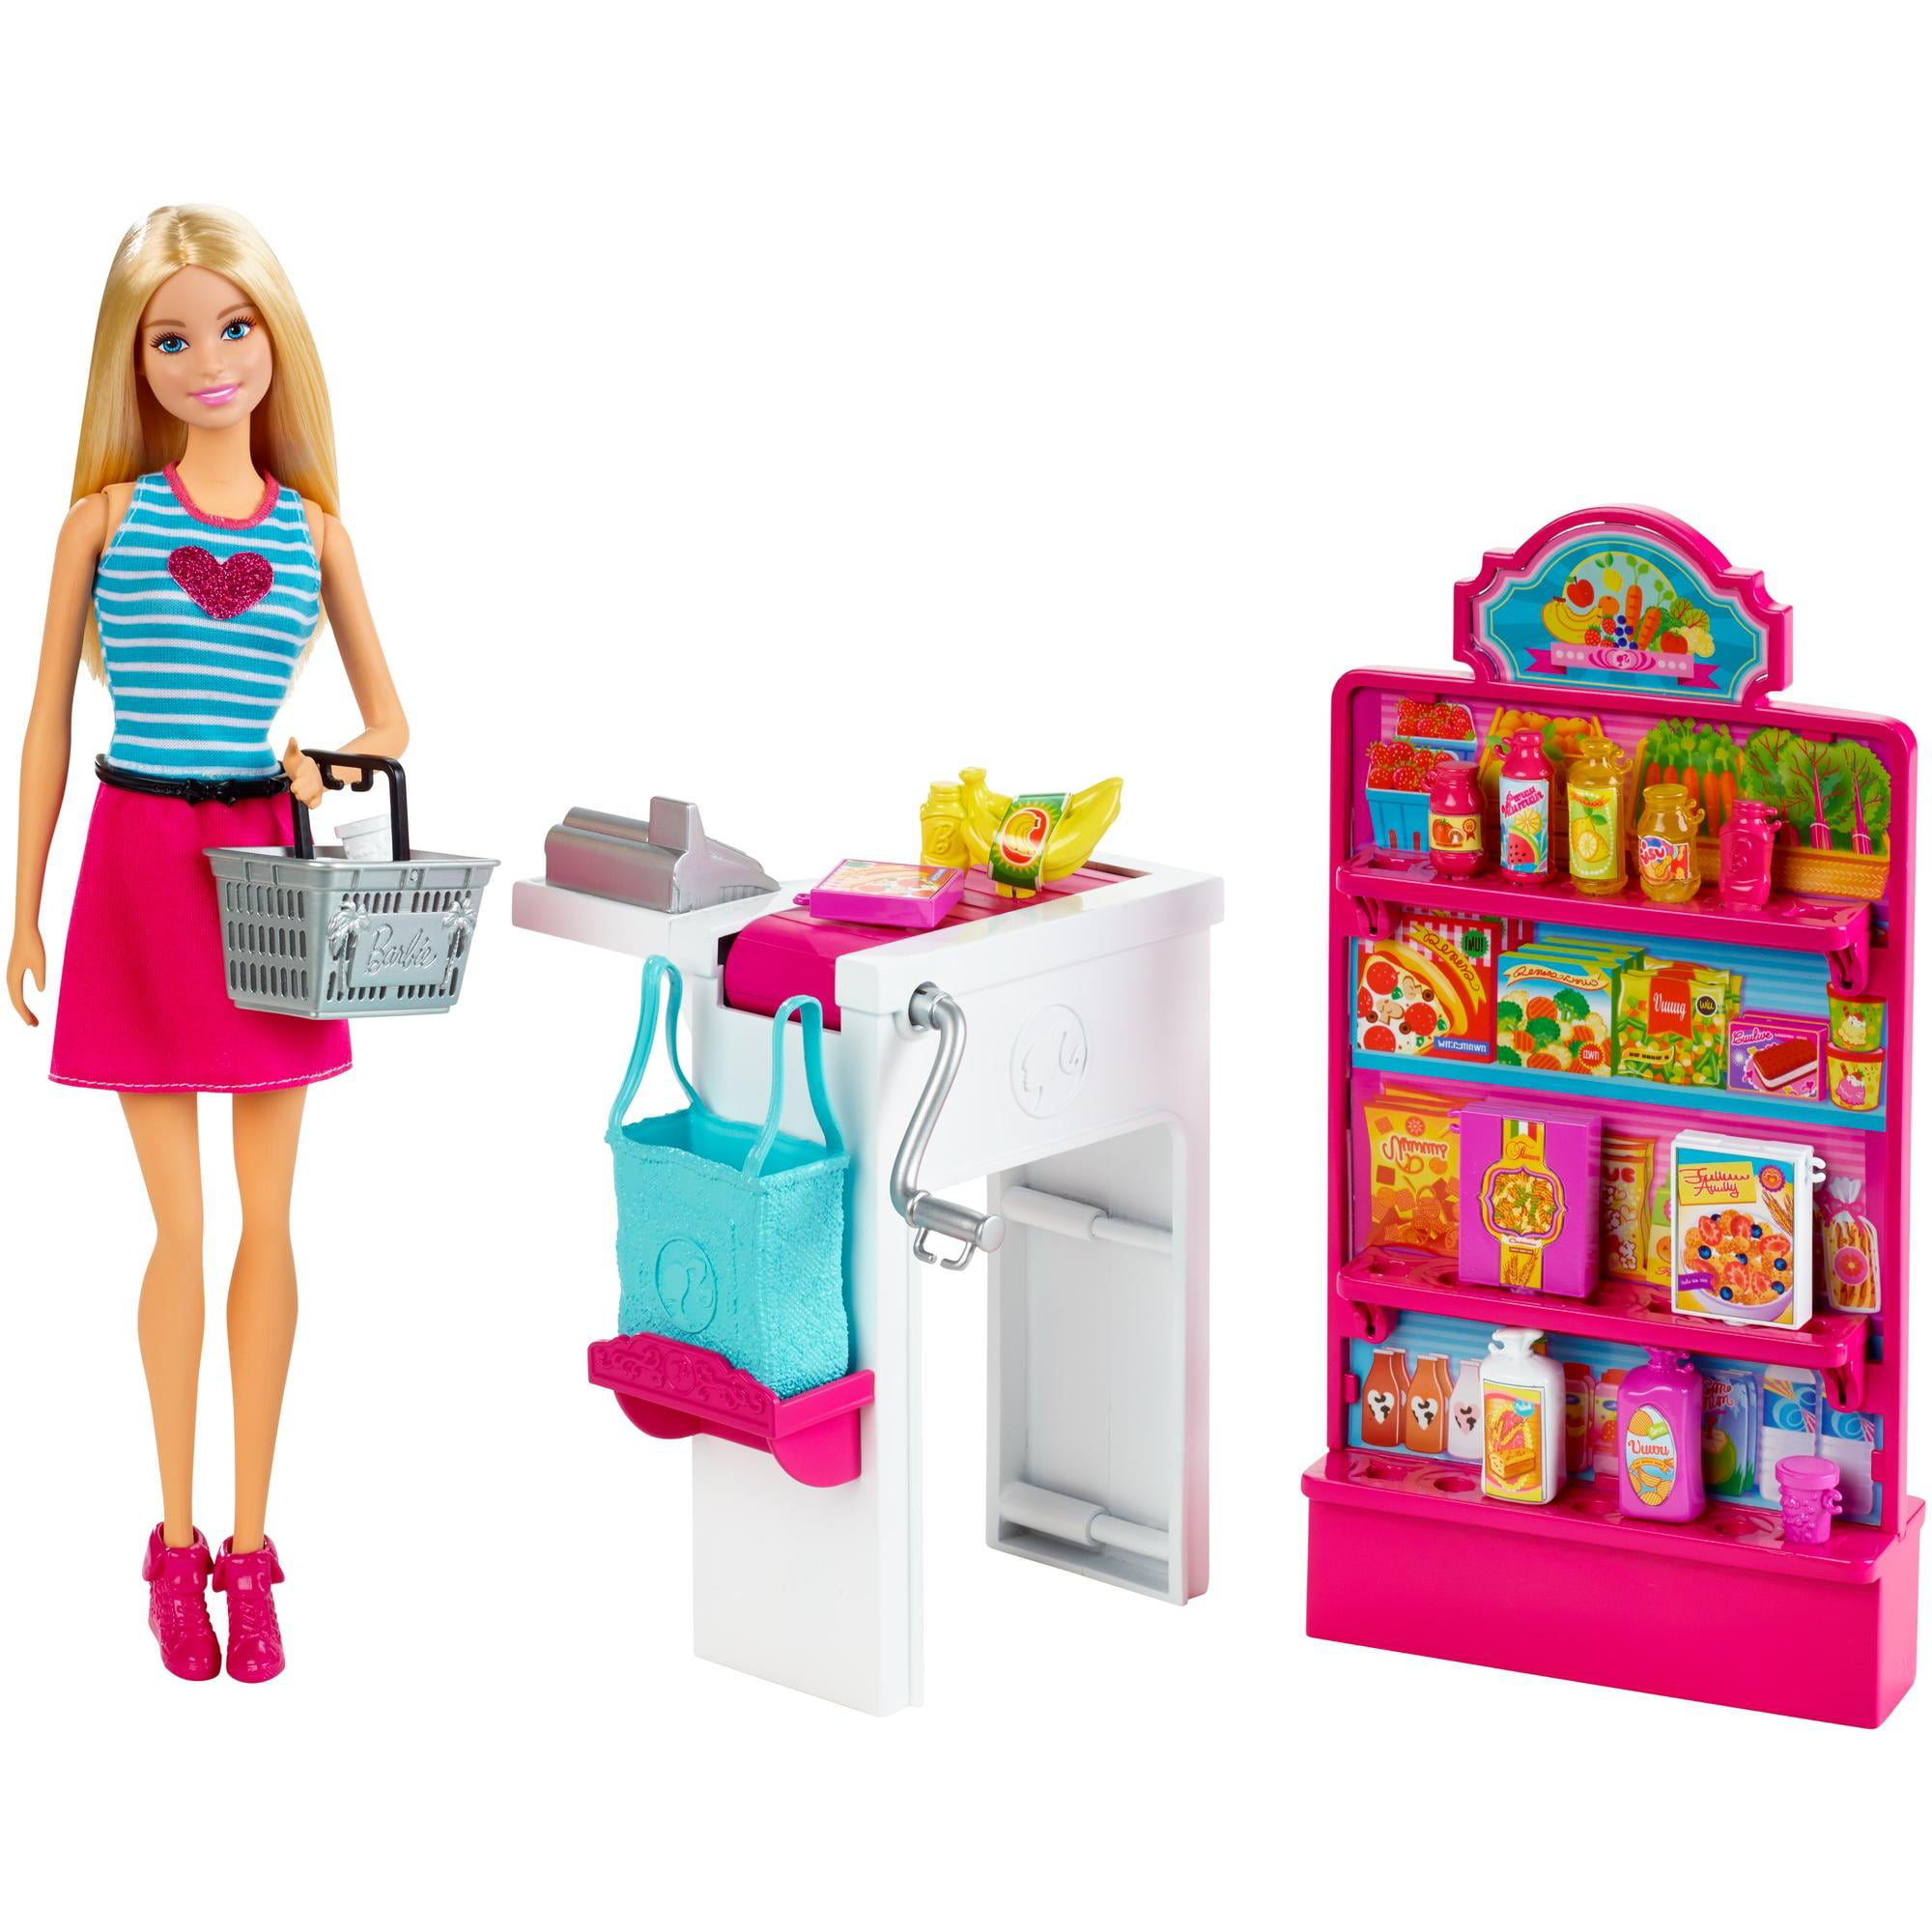 Игрушки набор куклы. Набор Barbie продуктовый магазин Малибу, 29 см, ckp77. Barbie Malibu набор. Куклы Барби плейсет. Игровой набор Barbie продуктовая Лавка.